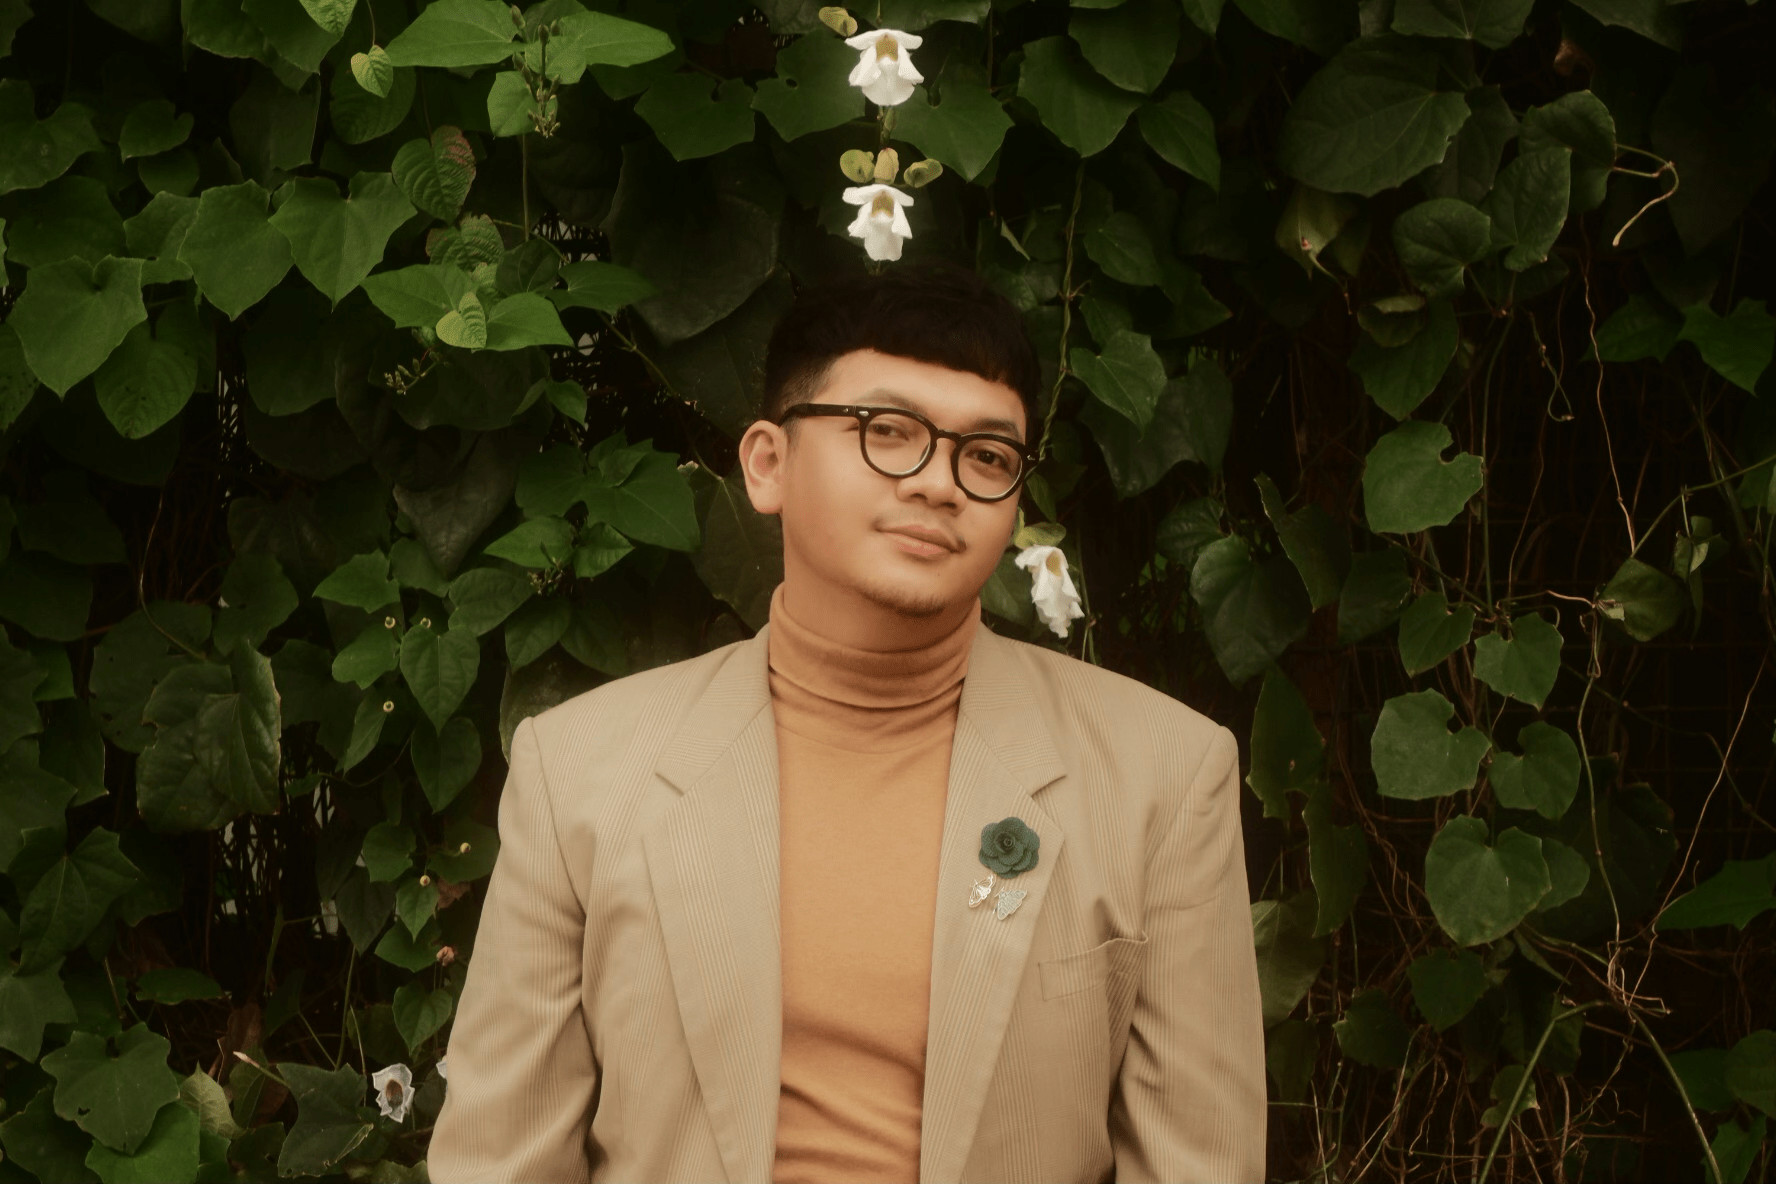 Kenalkan Nama Panggung “Nang Buju”, Ravi Rilis Single “Bersamamu Aku Cukup”